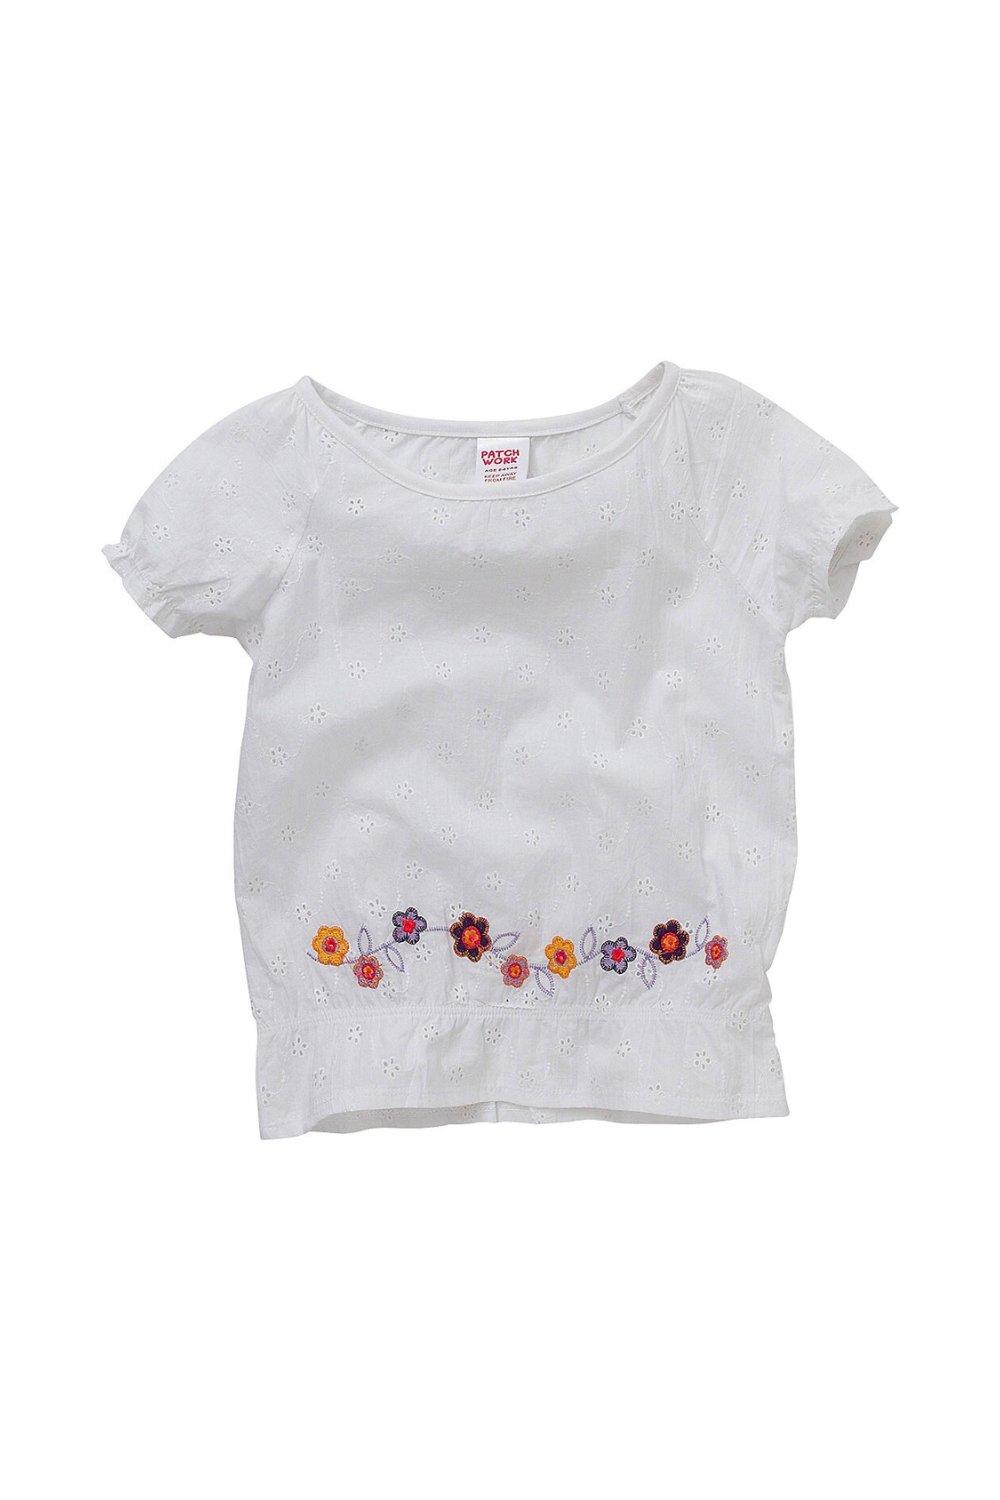 Летняя блузка с цветочной вышивкой Cozy n Dozy, белый блузка твое цветочная 46 размер